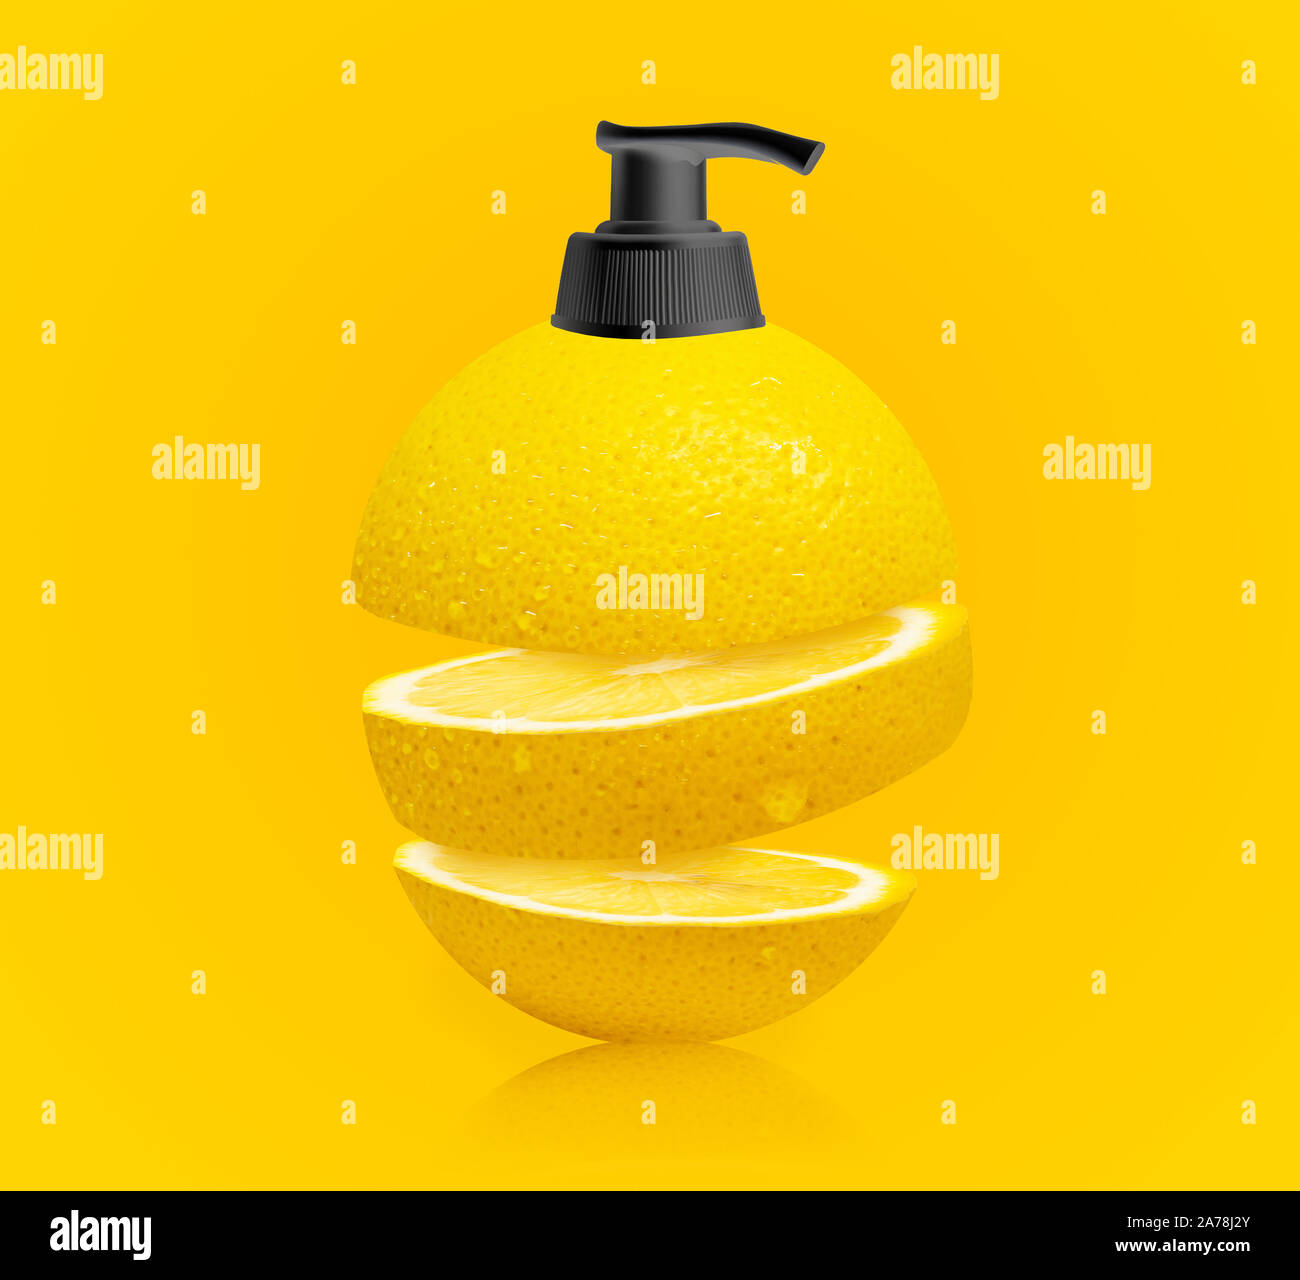 Mit orangengeschmack Gesicht waschen/orange aromatisiert Hand hash-Concept Art - orange Scheiben - Händedesinfektionsmittel - Shampoo Stockfoto